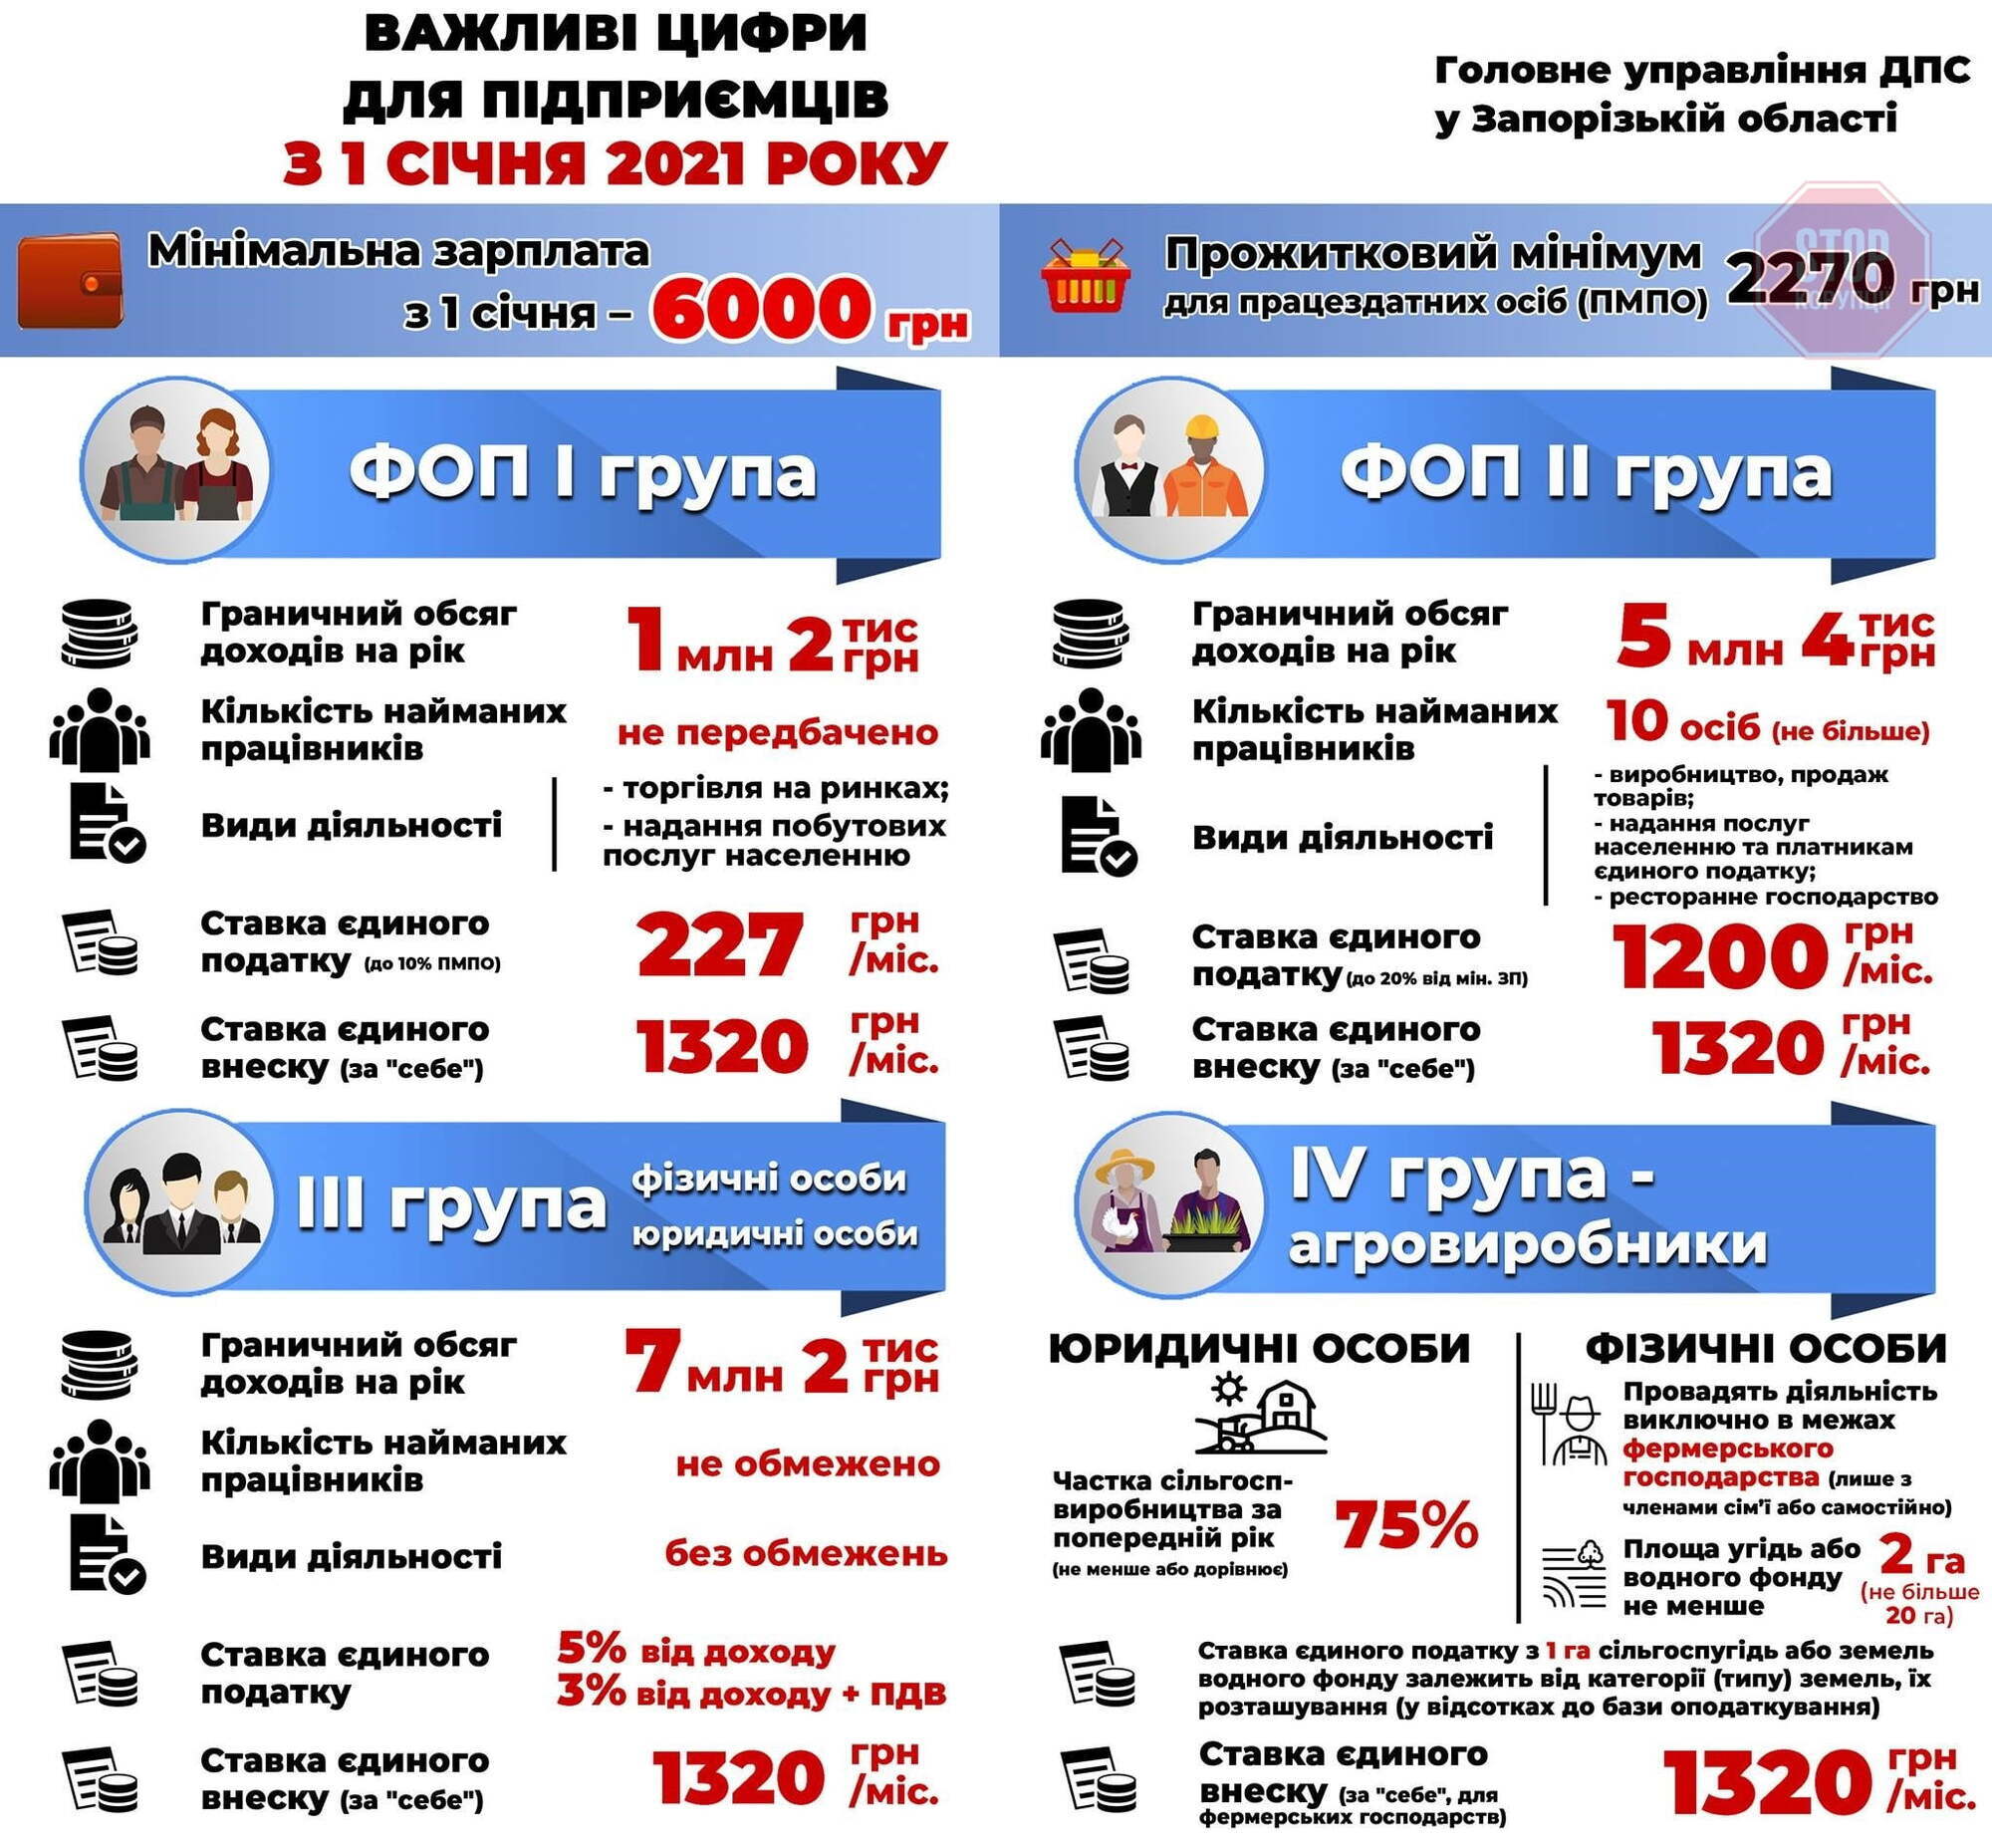  Інфографіка: ДПС України